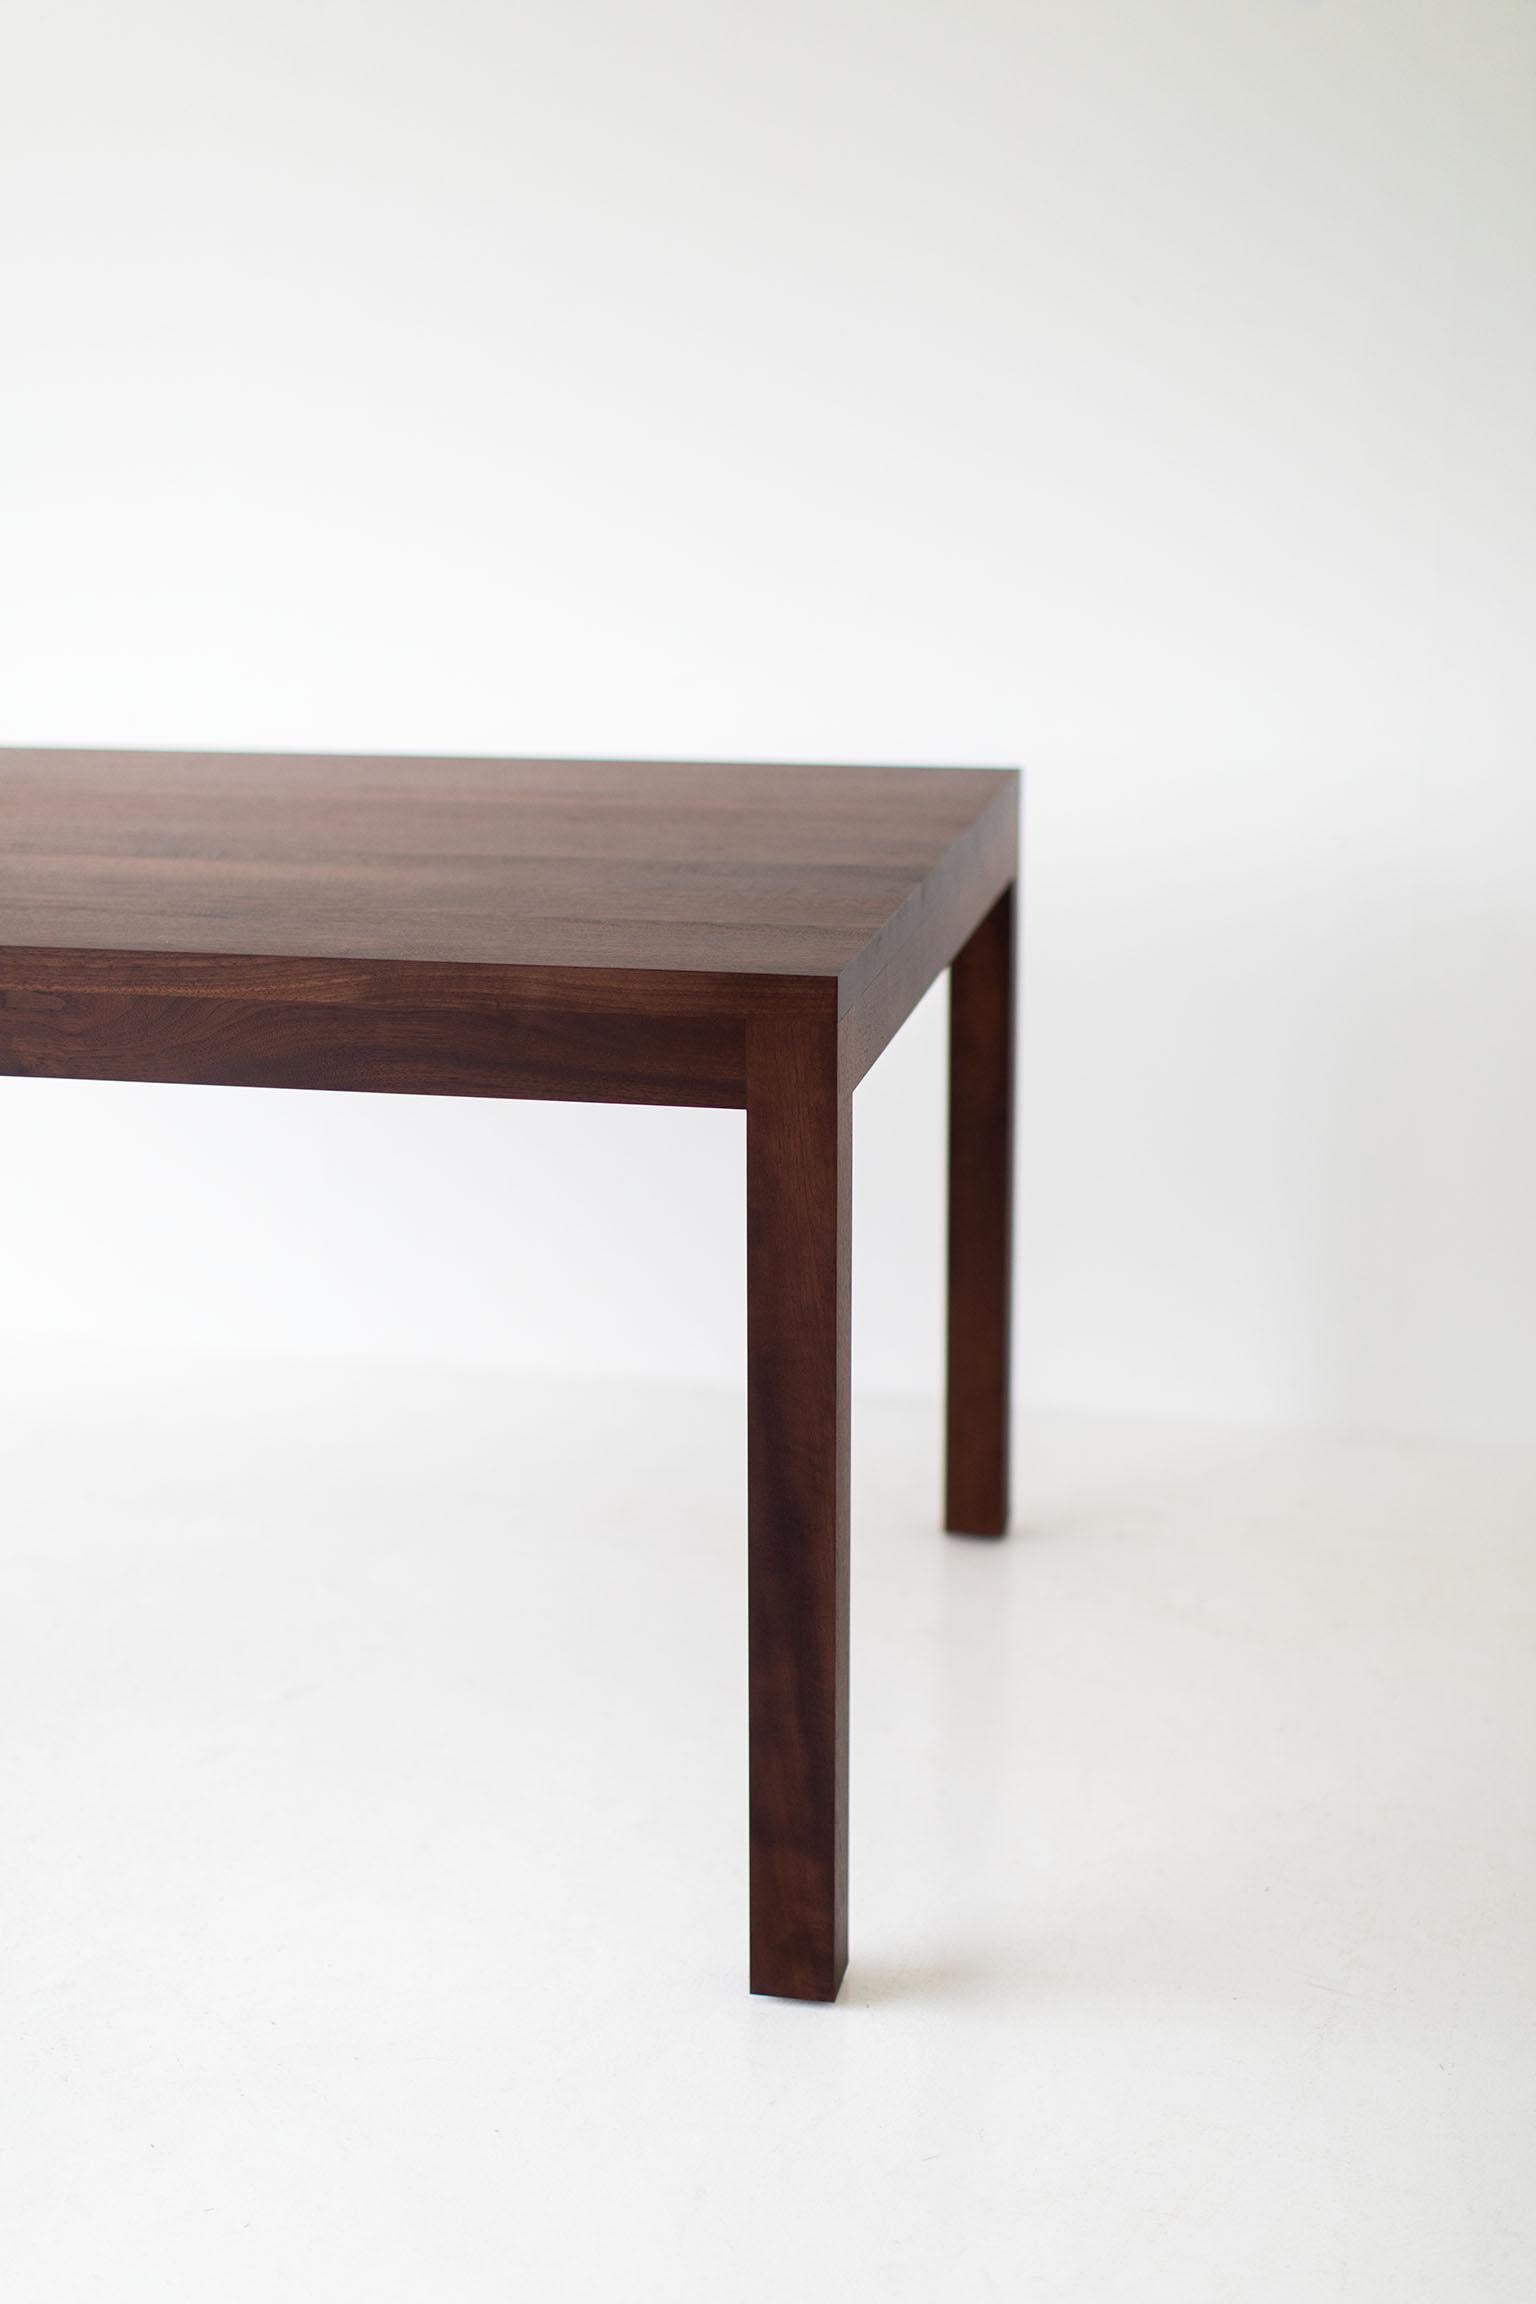 Dieser moderne Esstisch mit Verlängerung wird im Herzen von Ohio aus lokalem Holz hergestellt. Der Tisch kann mit oder ohne Verlängerung hergestellt werden. Die Blätter werden in der Mitte hinzugefügt, wobei die Maserung in die gleiche Richtung wie